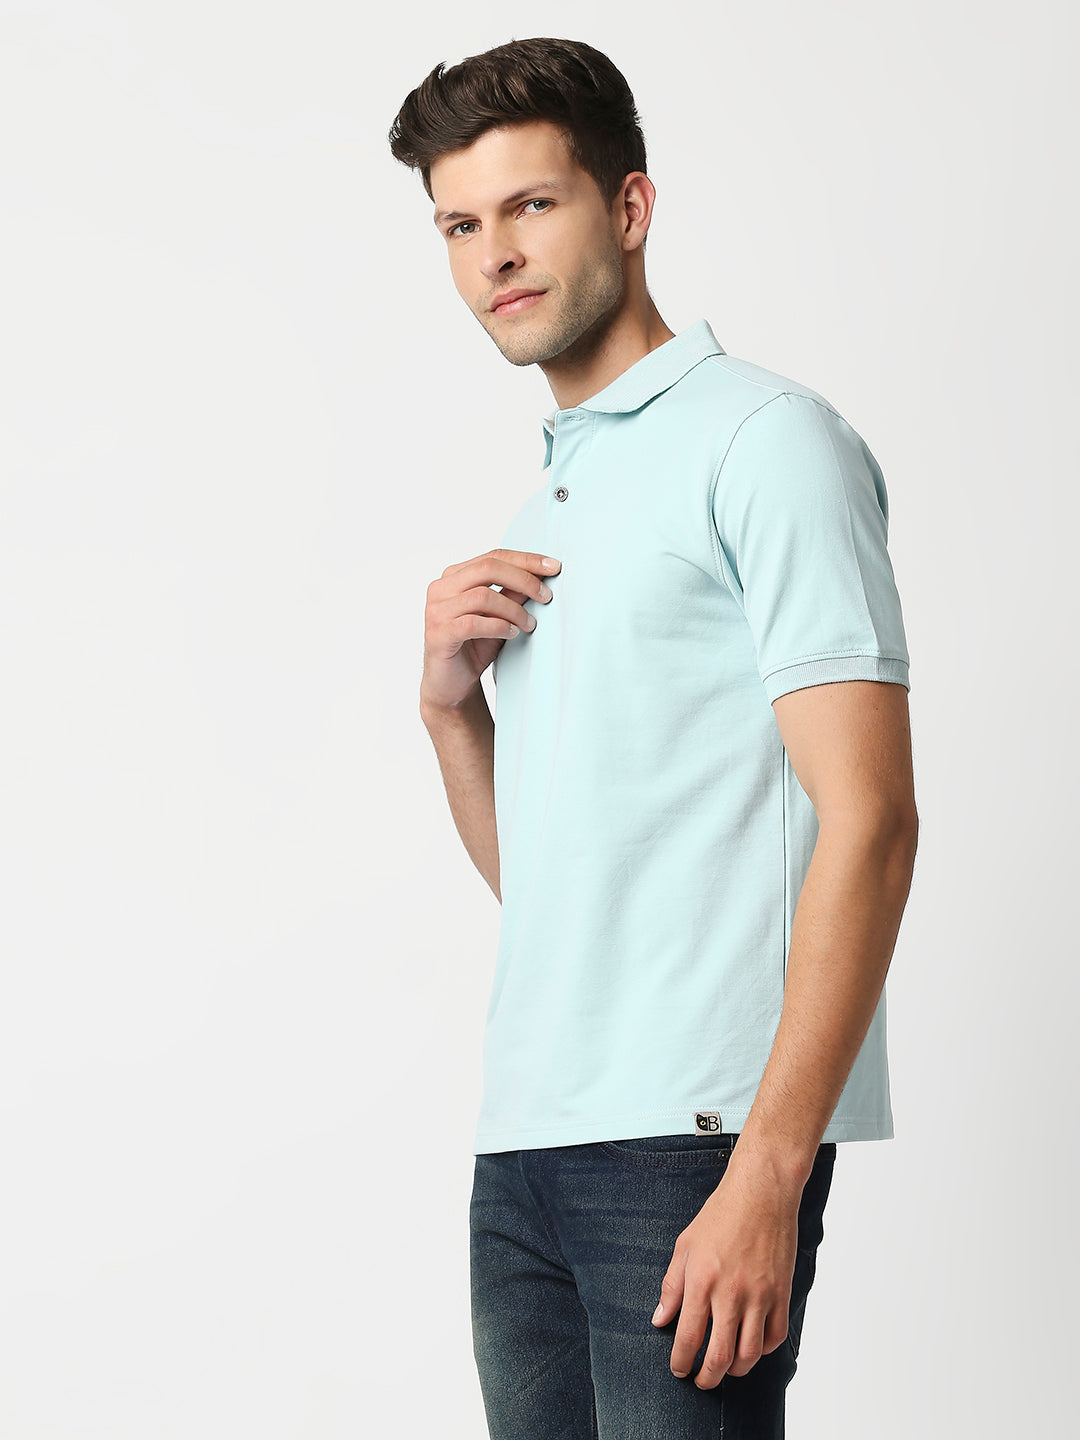 Buy Blamblack Men's Polo Plain Aqua Color T shirt